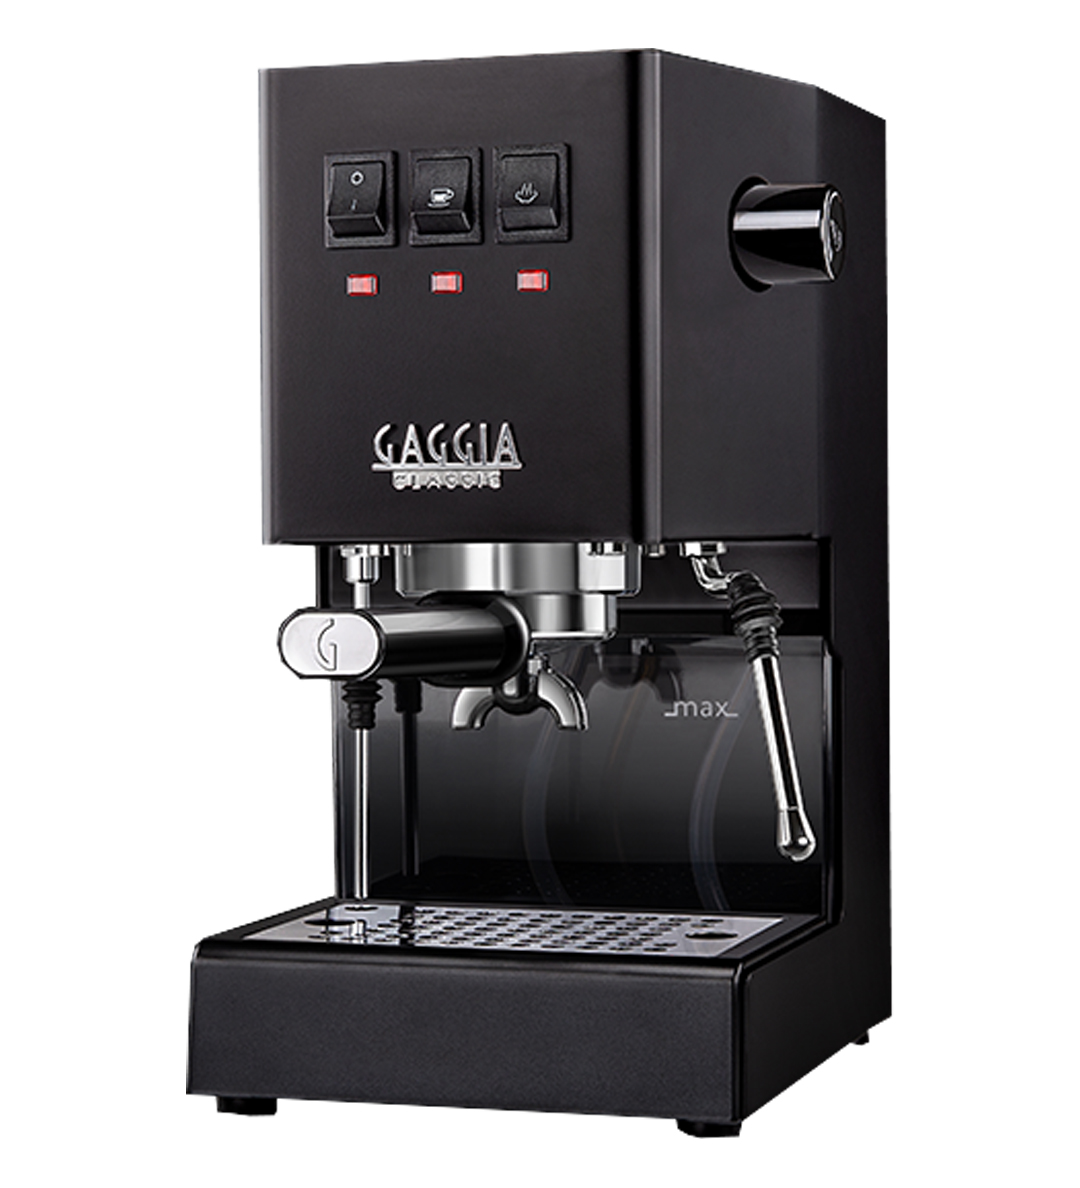 Gaggia Classic Pro Thunder Black Espresso Machine